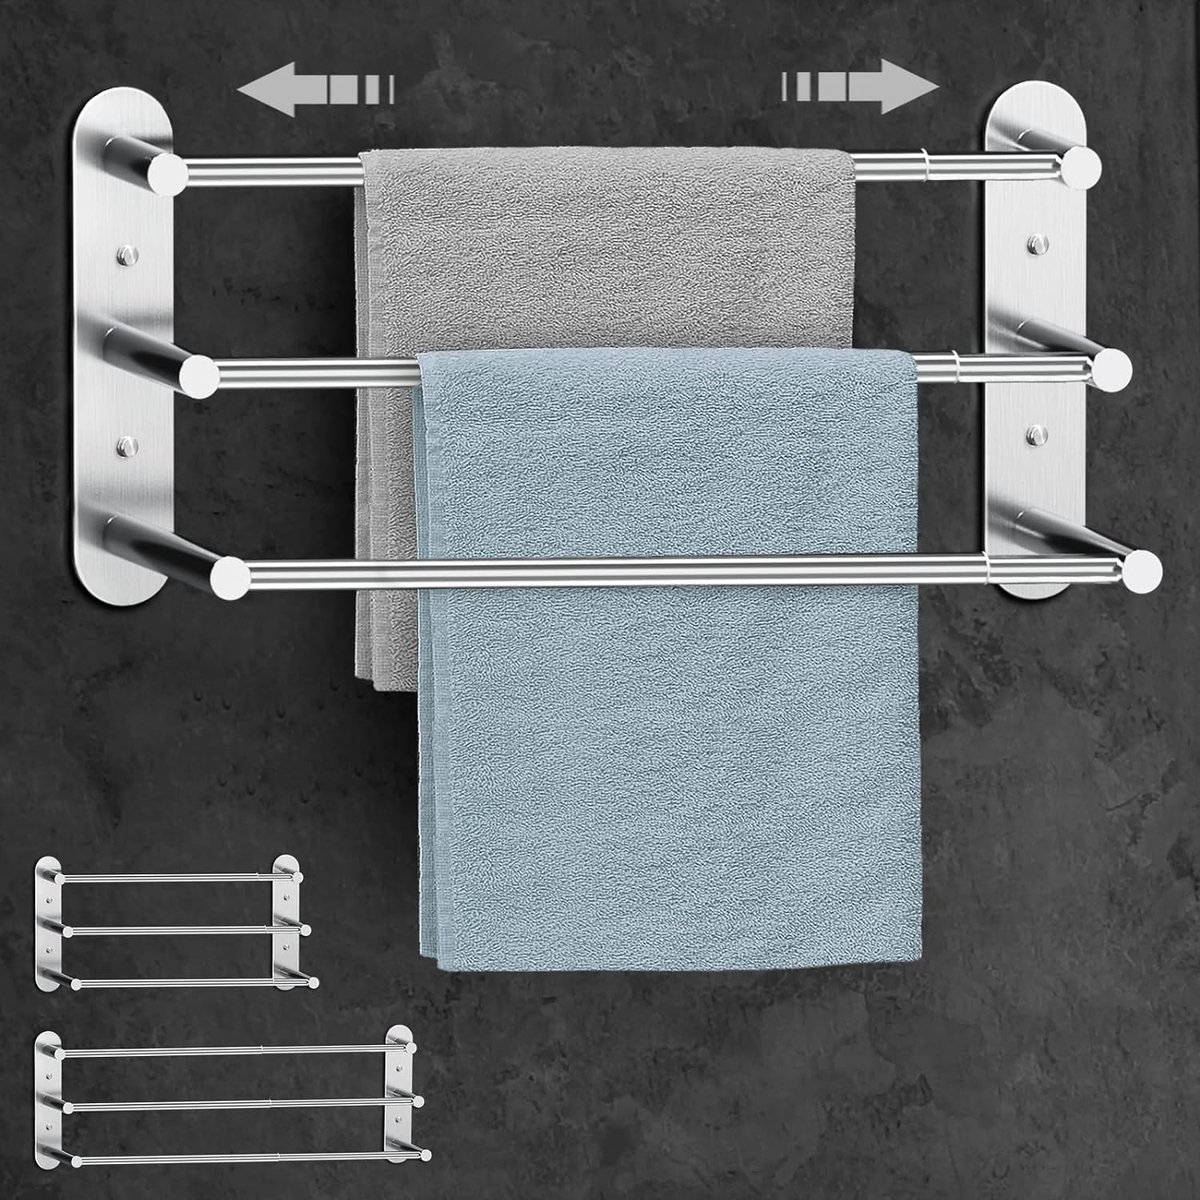 Handdoekrek zonder boren - Uitschuifbaar handdoekrek voor badkamer 37-70 cm - Roestvrijstalen handdoekrek met wandplank voor badkamer en keuken - 2 installatiemethoden, zilver.